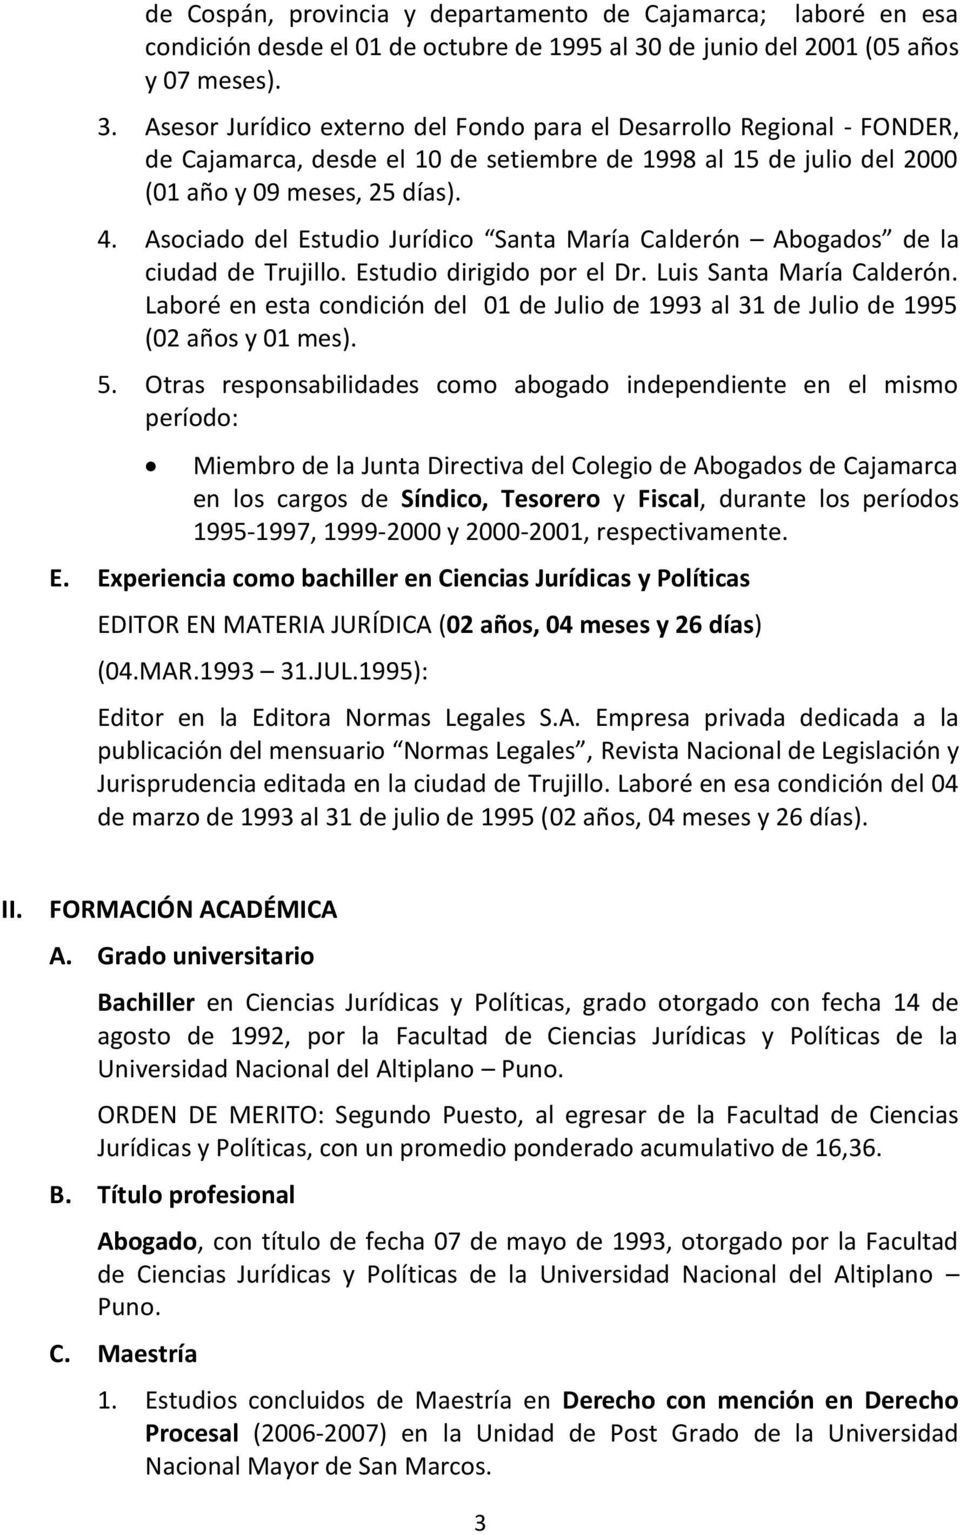 Asesor Jurídico externo del Fondo para el Desarrollo Regional - FONDER, de Cajamarca, desde el 10 de setiembre de 1998 al 15 de julio del 2000 (01 año y 09 meses, 25 días). 4.